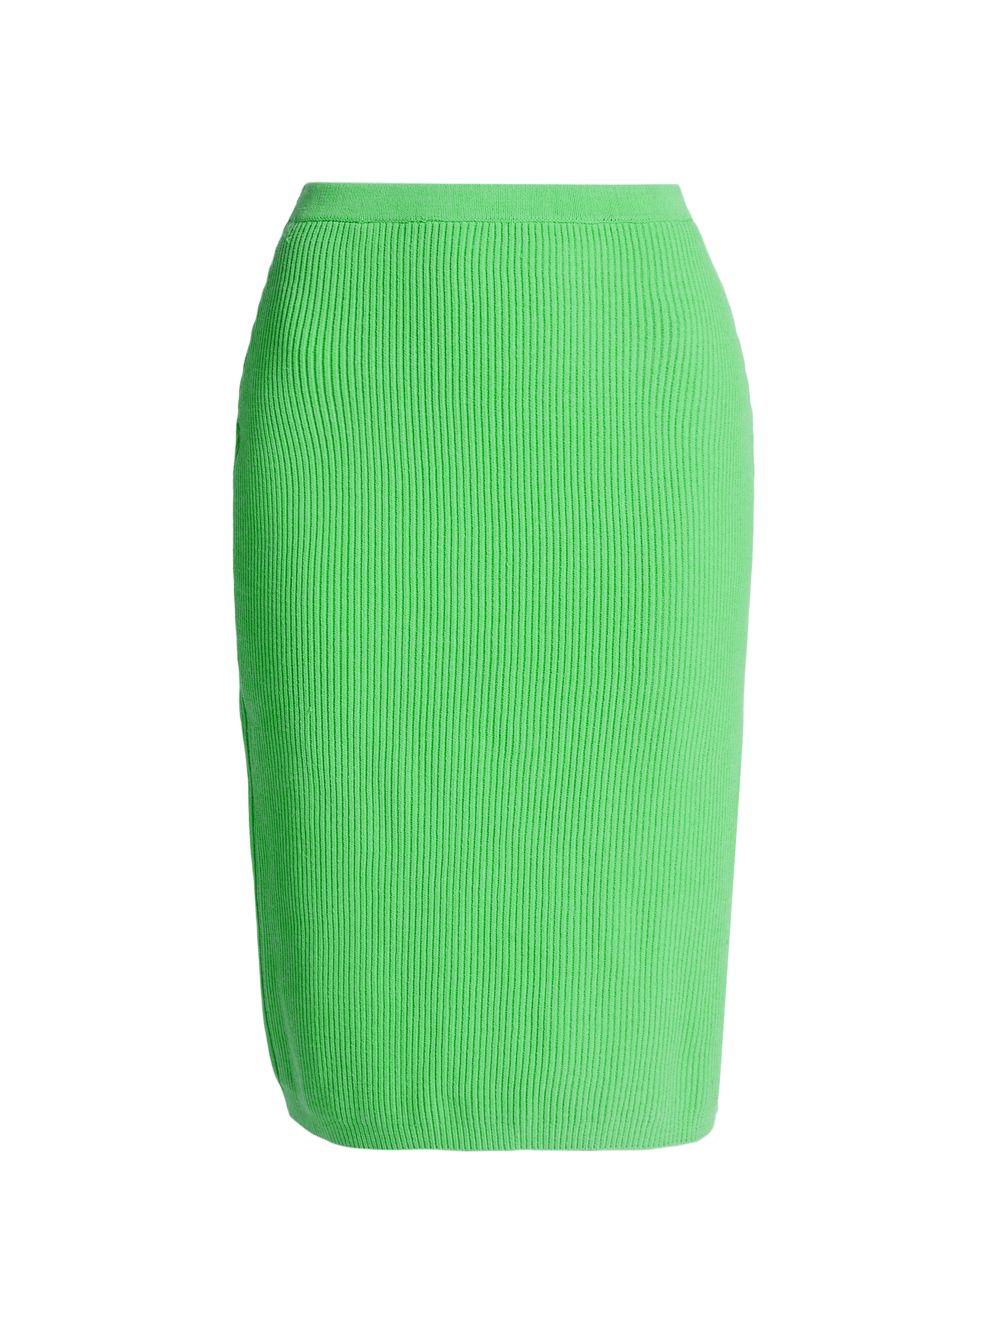 Трикотажная юбка в рубчик Impala Rachel Comey, зеленый кардиган rachel comey размер xs бежевый